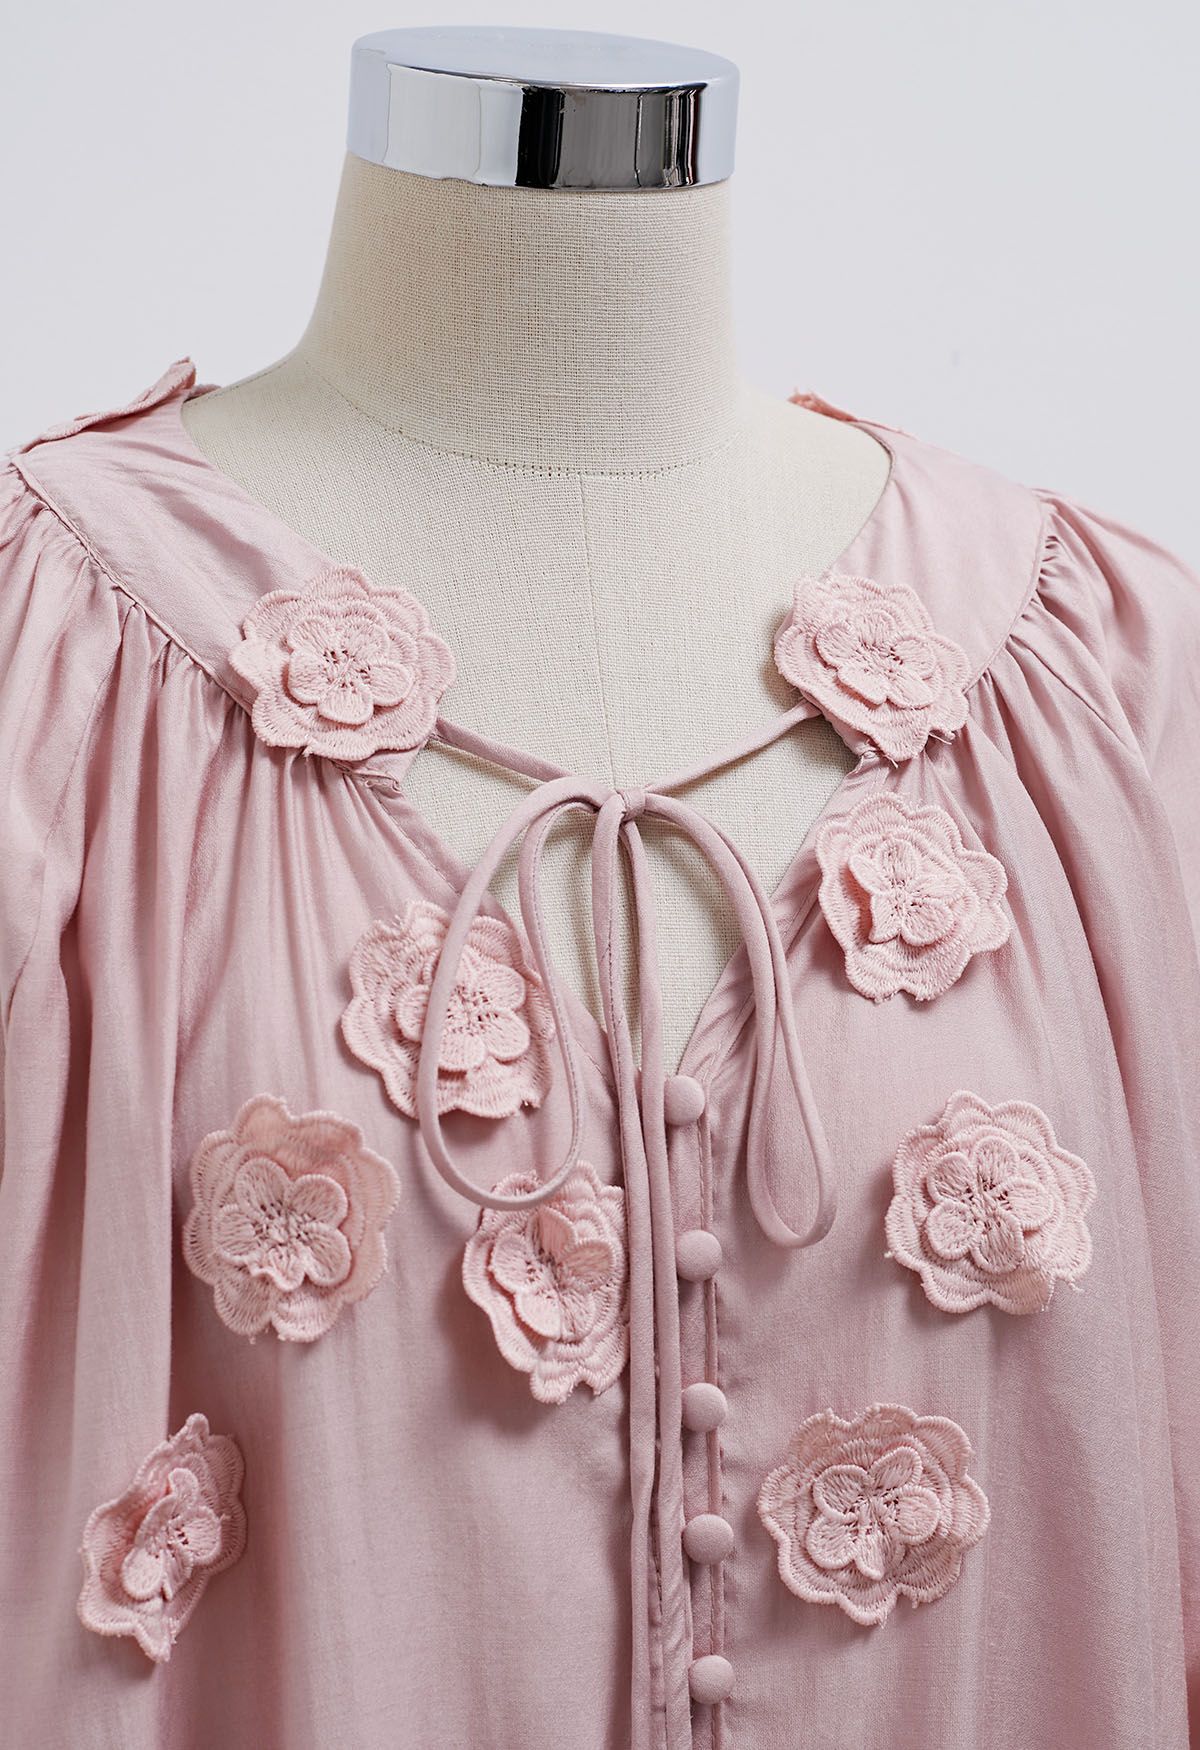 Romantisches Blüten-Hemd mit 3D-Spitzenblumen und Knöpfen in Rosa